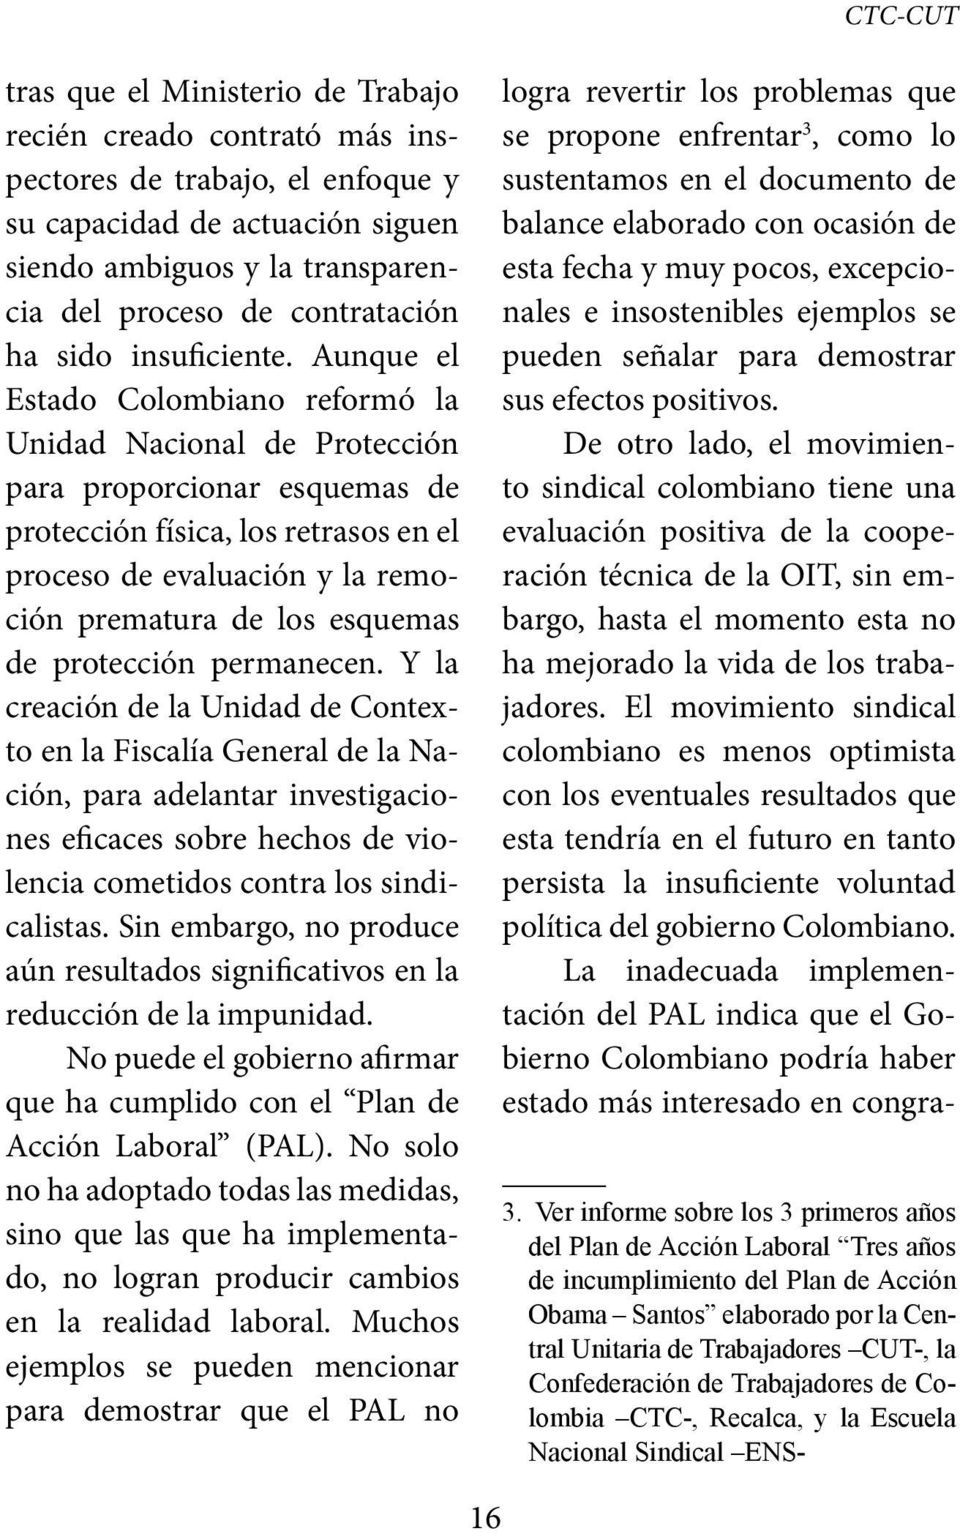 Aunque el Estado Colombiano reformó la Unidad Nacional de Protección para proporcionar esquemas de protección física, los retrasos en el proceso de evaluación y la remoción prematura de los esquemas